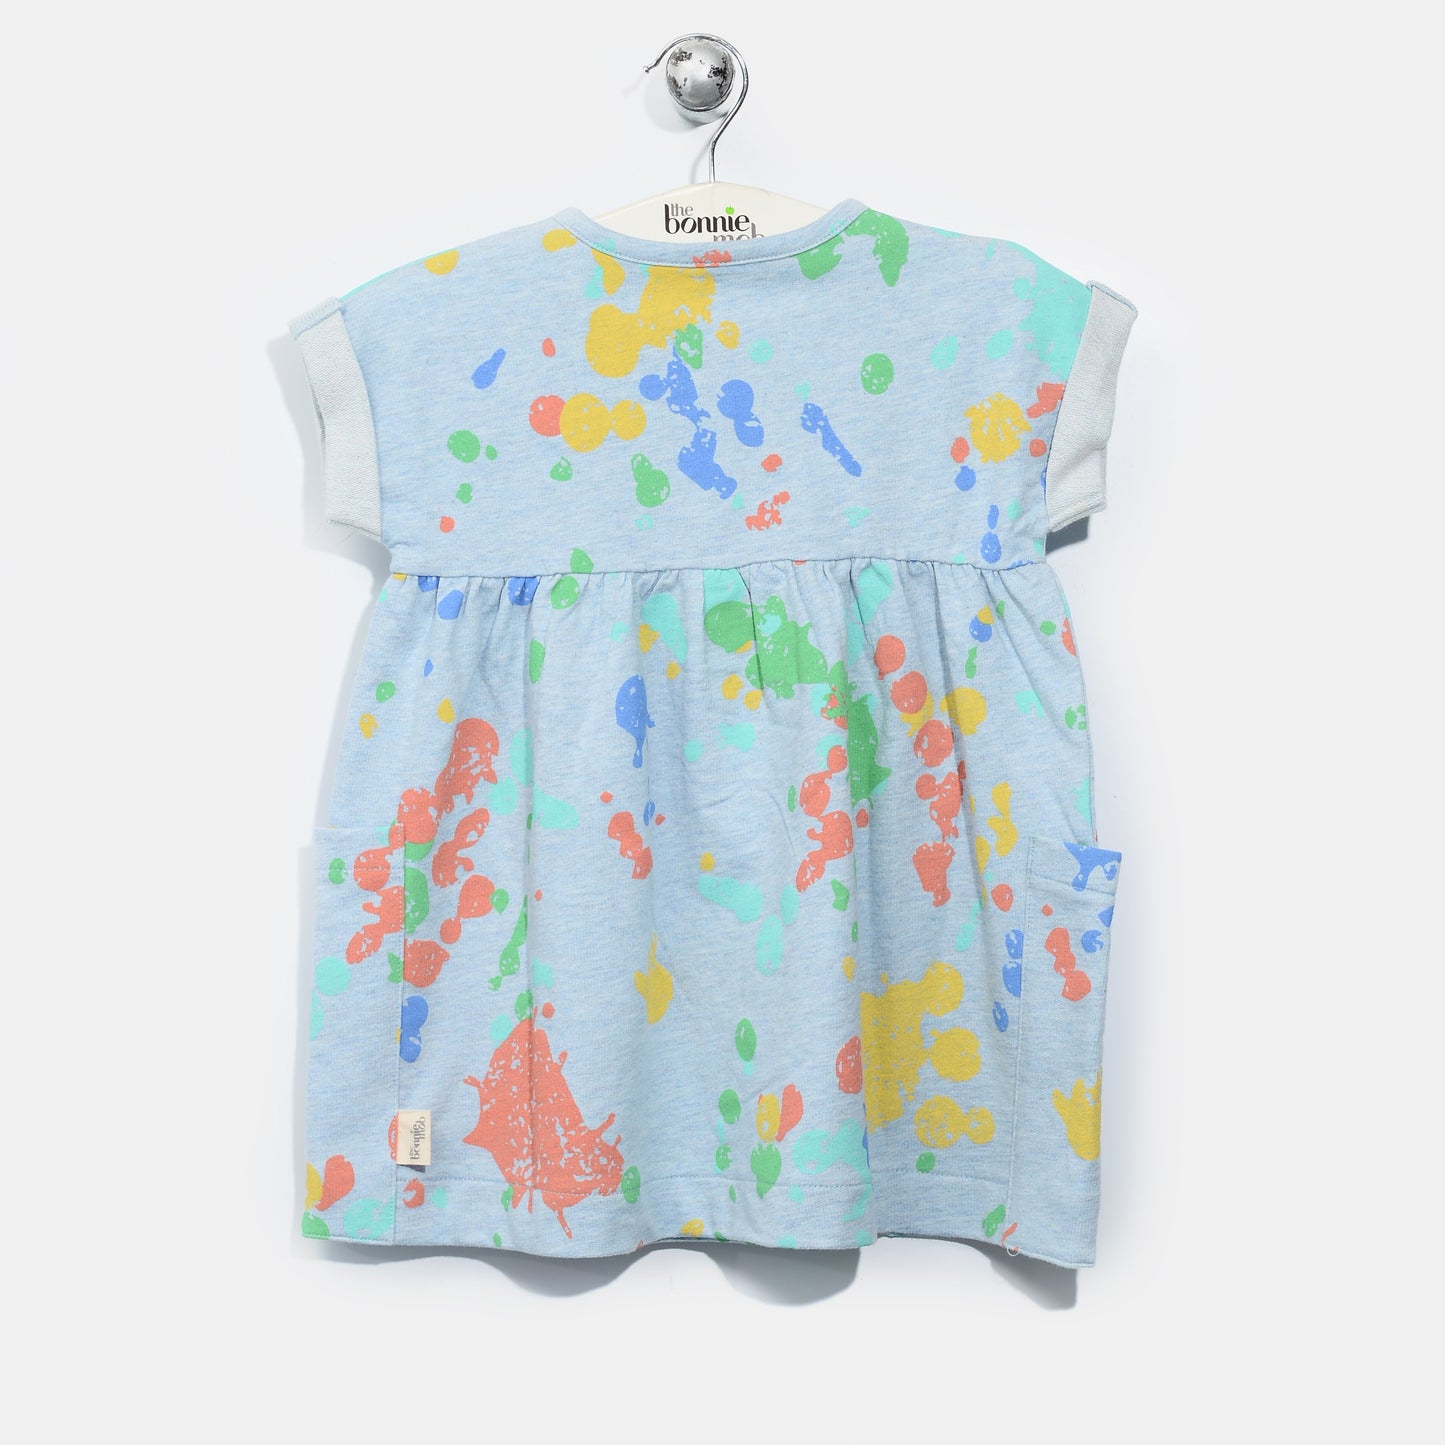 L-RACHEL-Splatter Print Dress-Kids Girl-Faded Denim